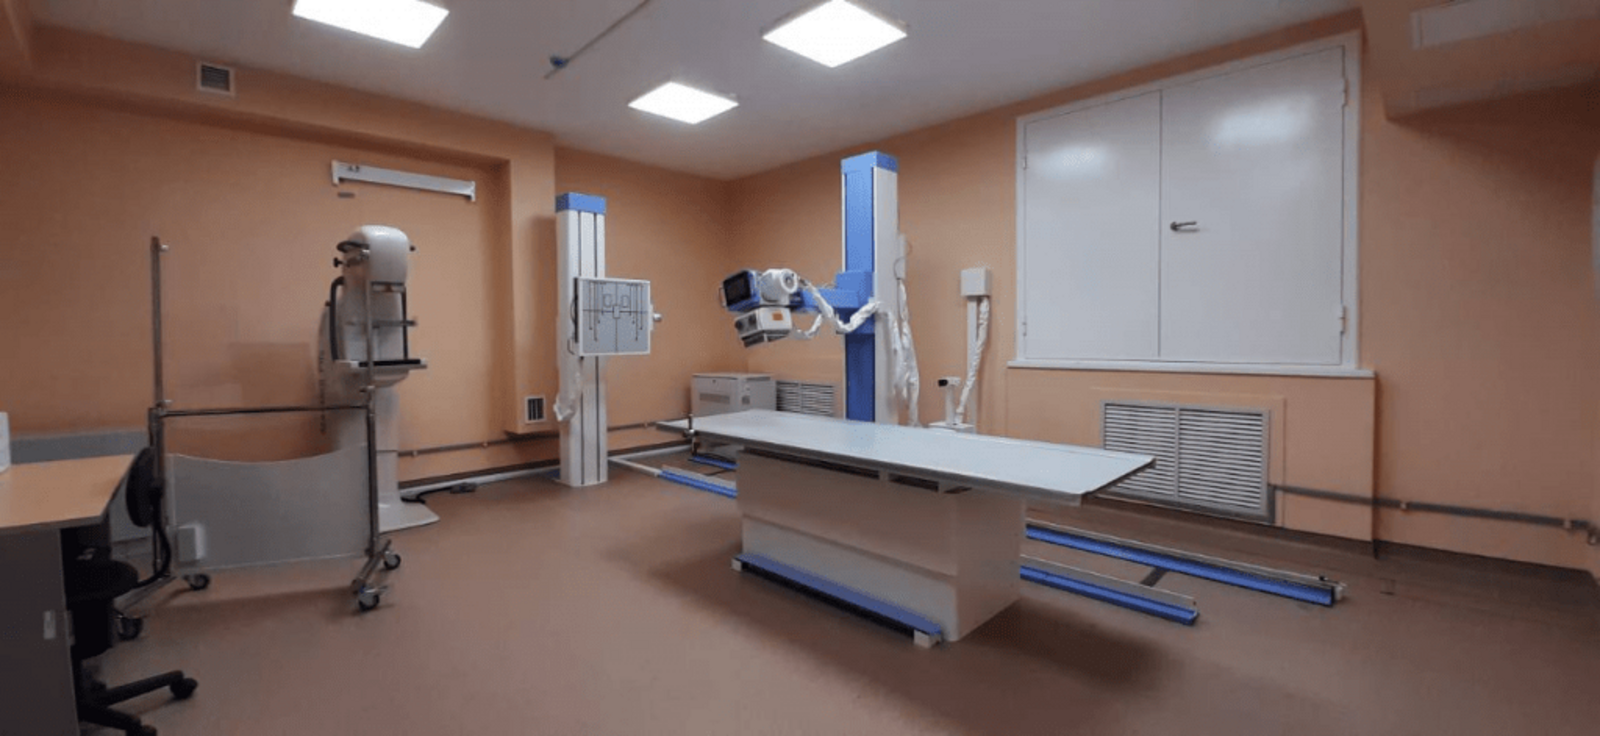 Нацпроект «Здравоохранение»: в Языковской больнице Республики Башкортостан установили новое оборудование